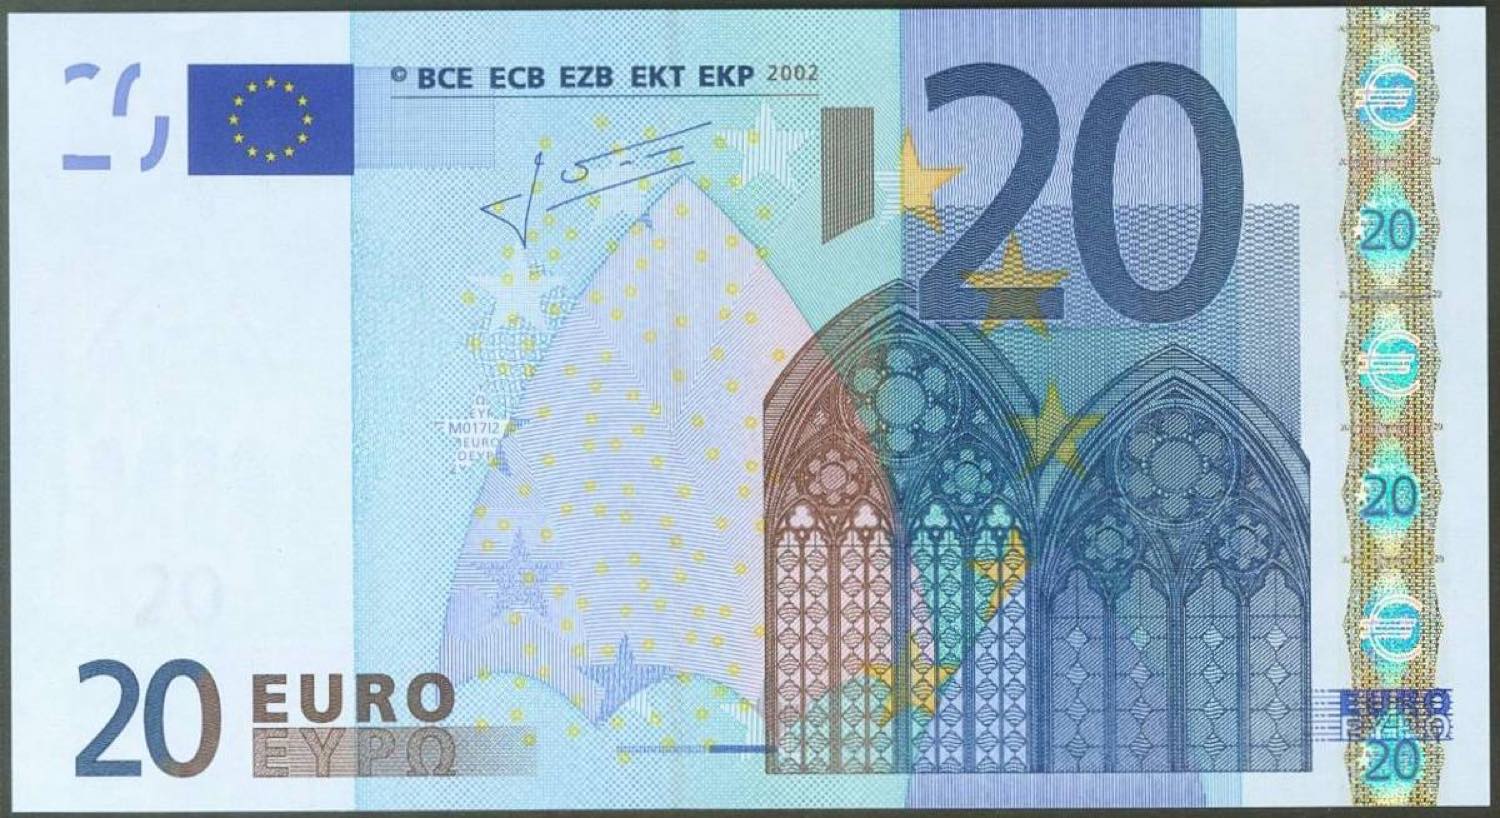 Los billetes de euro que se venden en subastas online por hasta 550 euros